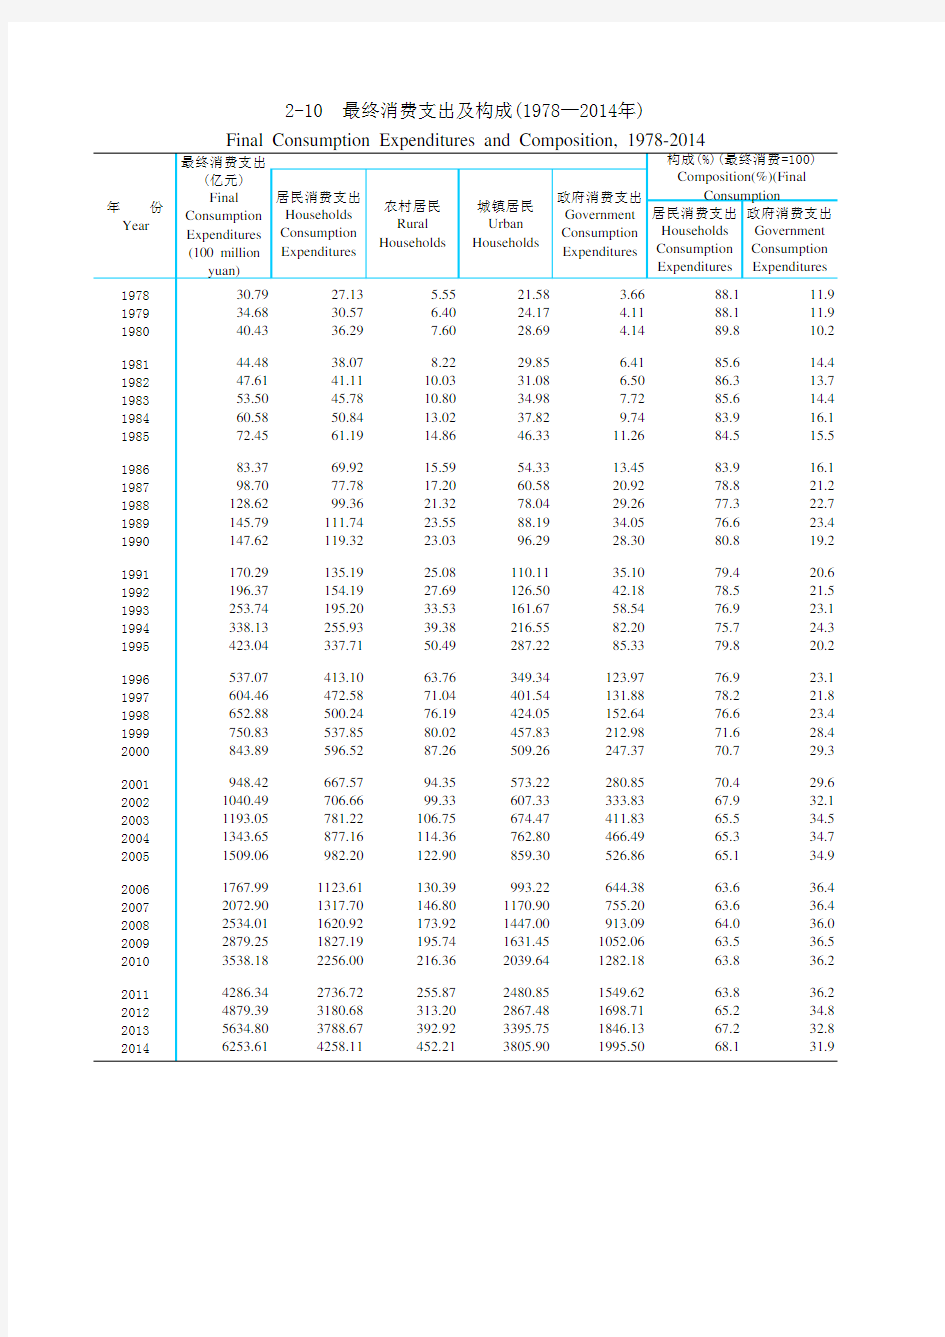 天津统计年鉴2015社会经济发展指标：最终消费支出及构成(1978—2014年)